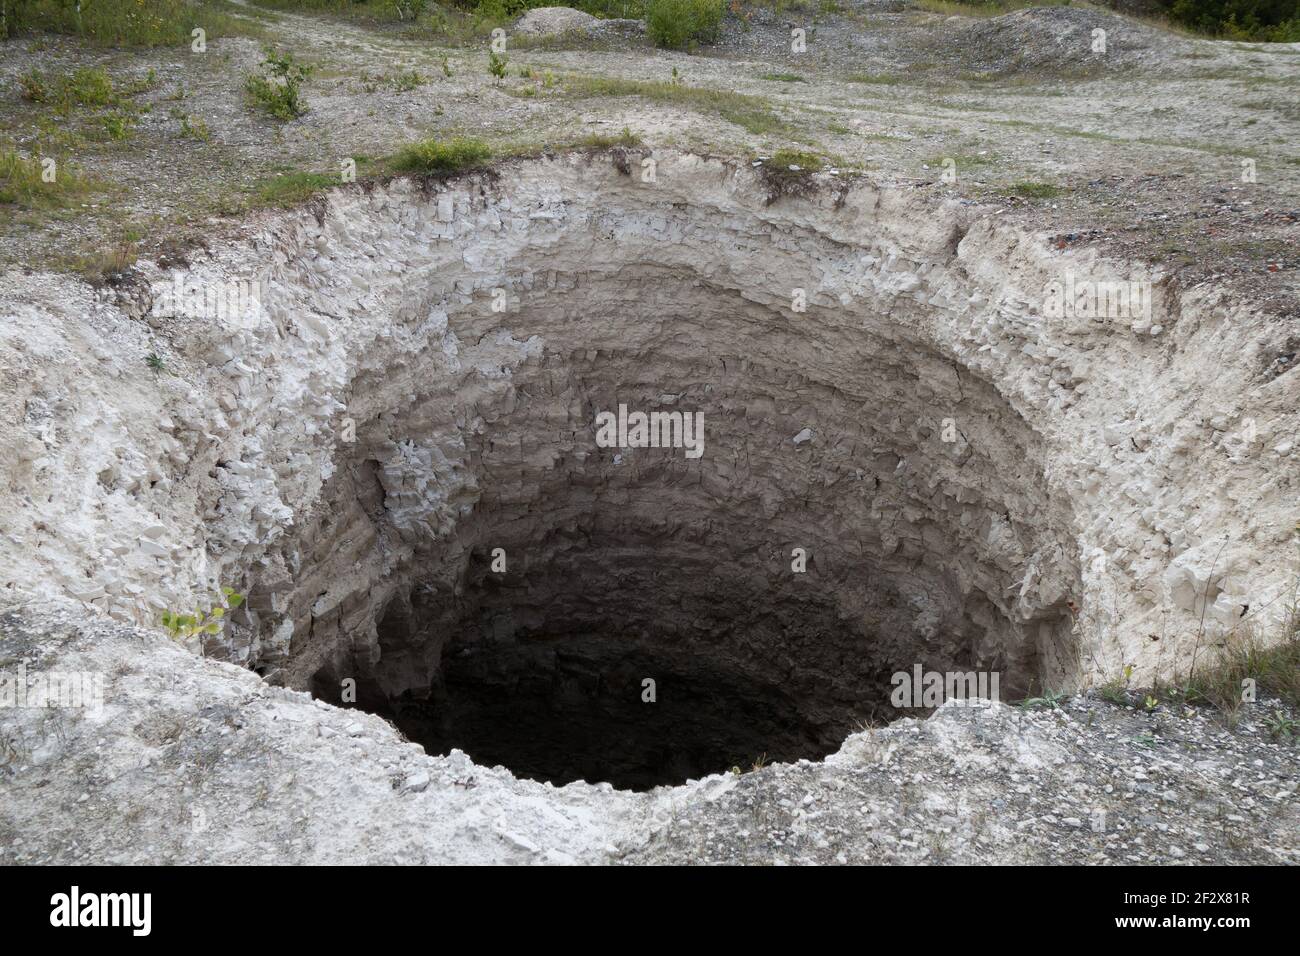 Abertura negra del agujero de karst, formado sobre la mina de piedra caliza abandonada. Diámetro de unos 15 pies, profundidad de unos 40-50 pies. El proceso de formación sigue en curso Foto de stock